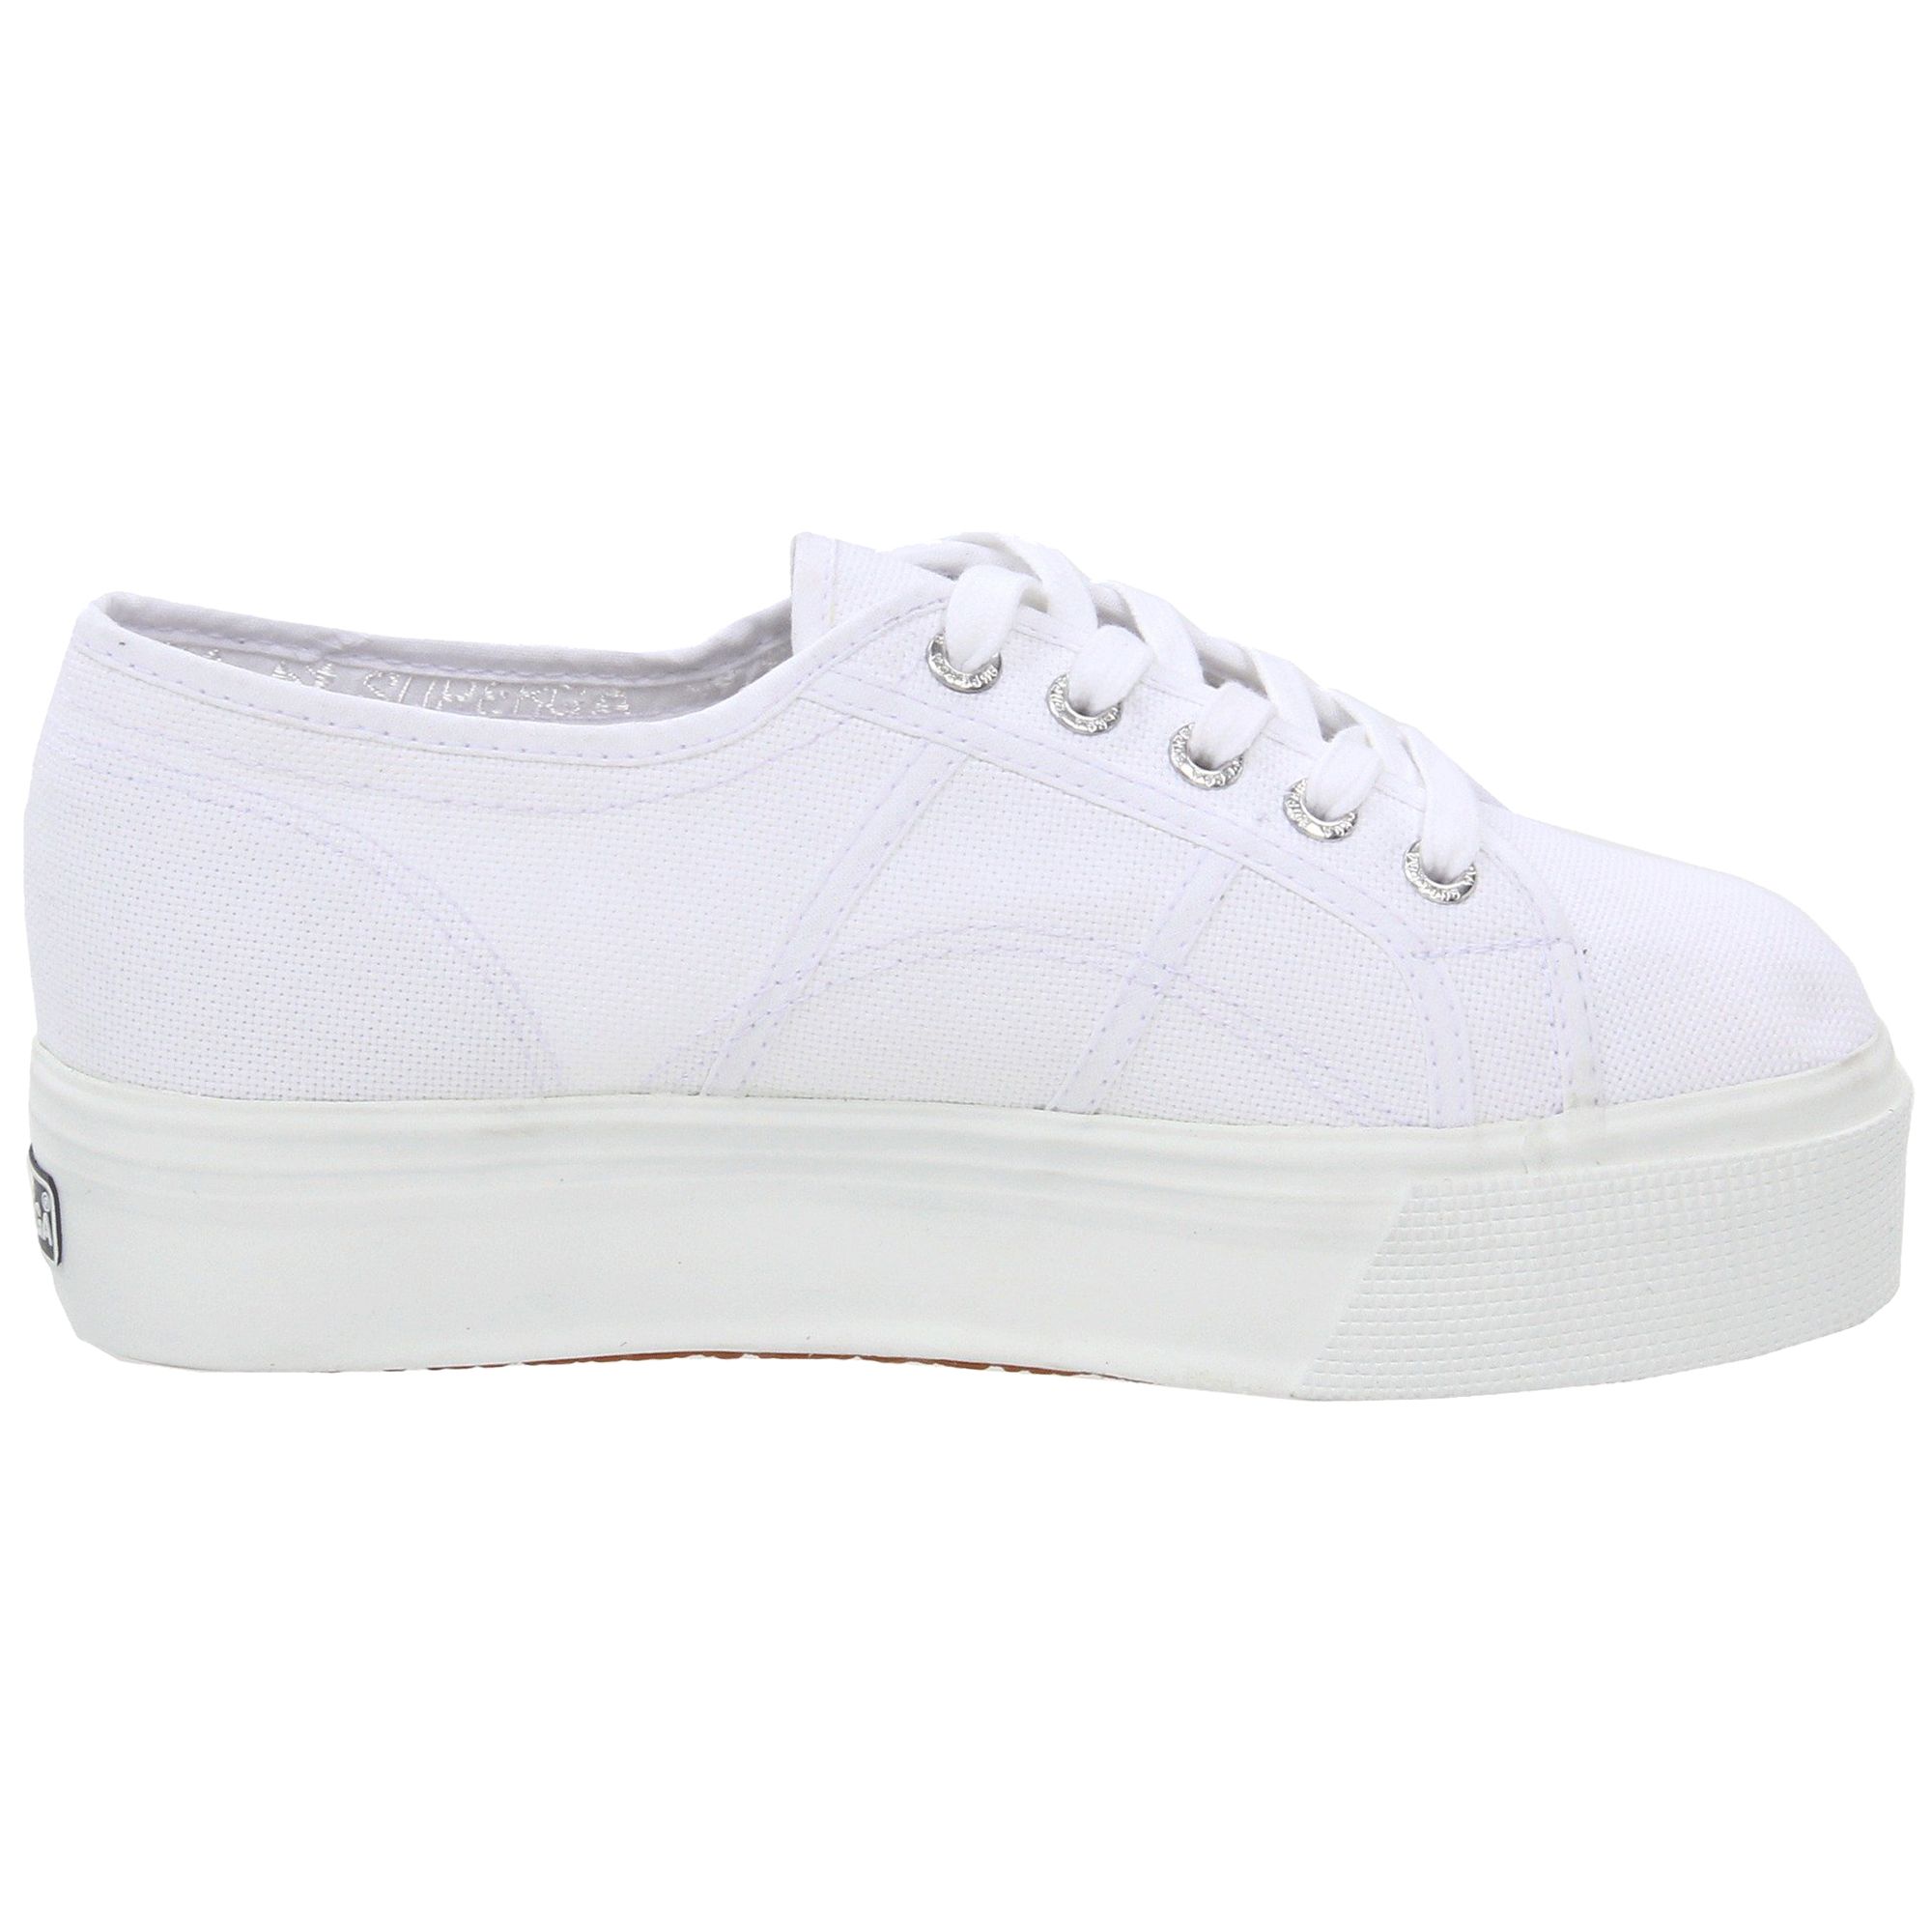 Footwear, White, Shoe, Sneakers, Walking shoe, Plimsoll shoe, Outdoor shoe, Tennis shoe, Skate shoe, Athletic shoe, 